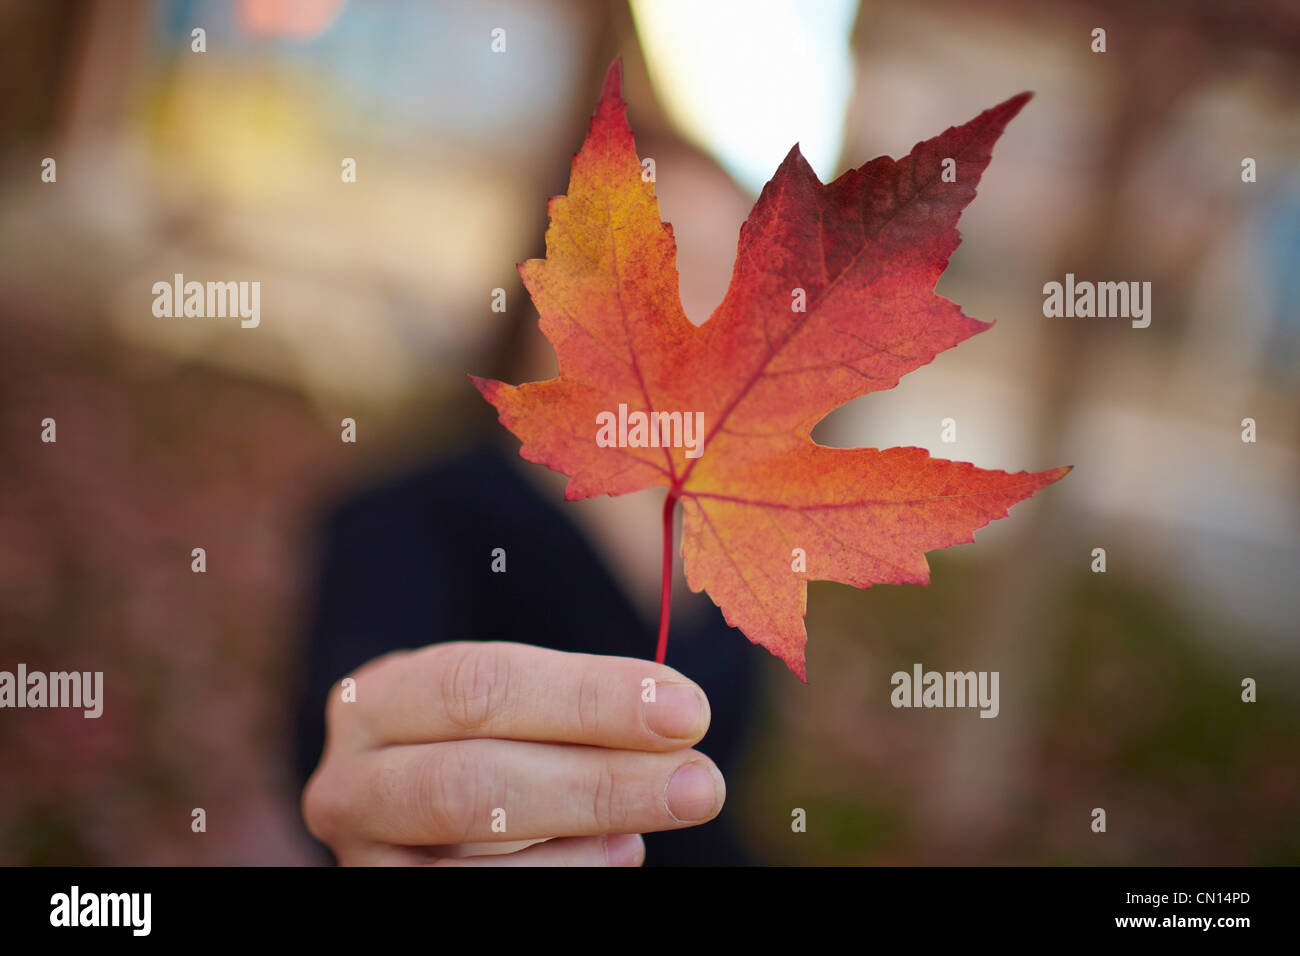 Main tenant feuille d'érable en automne, Canada Banque D'Images